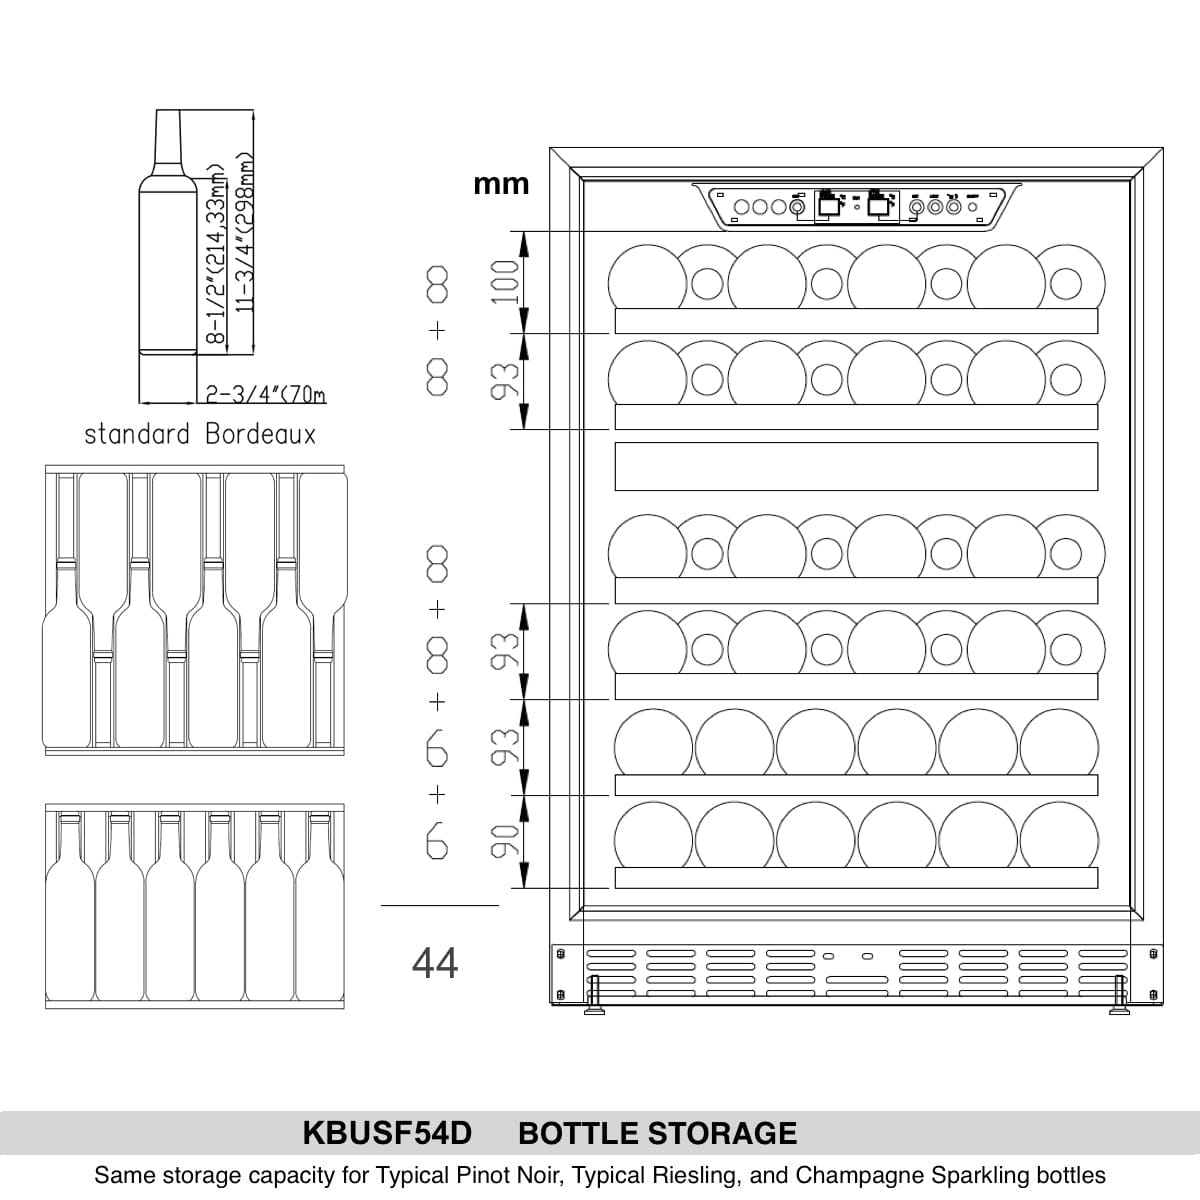 KingsBottle 44 Bottle Dual Zone Triple Glass Door Wine Cooler bottle storage diagram.